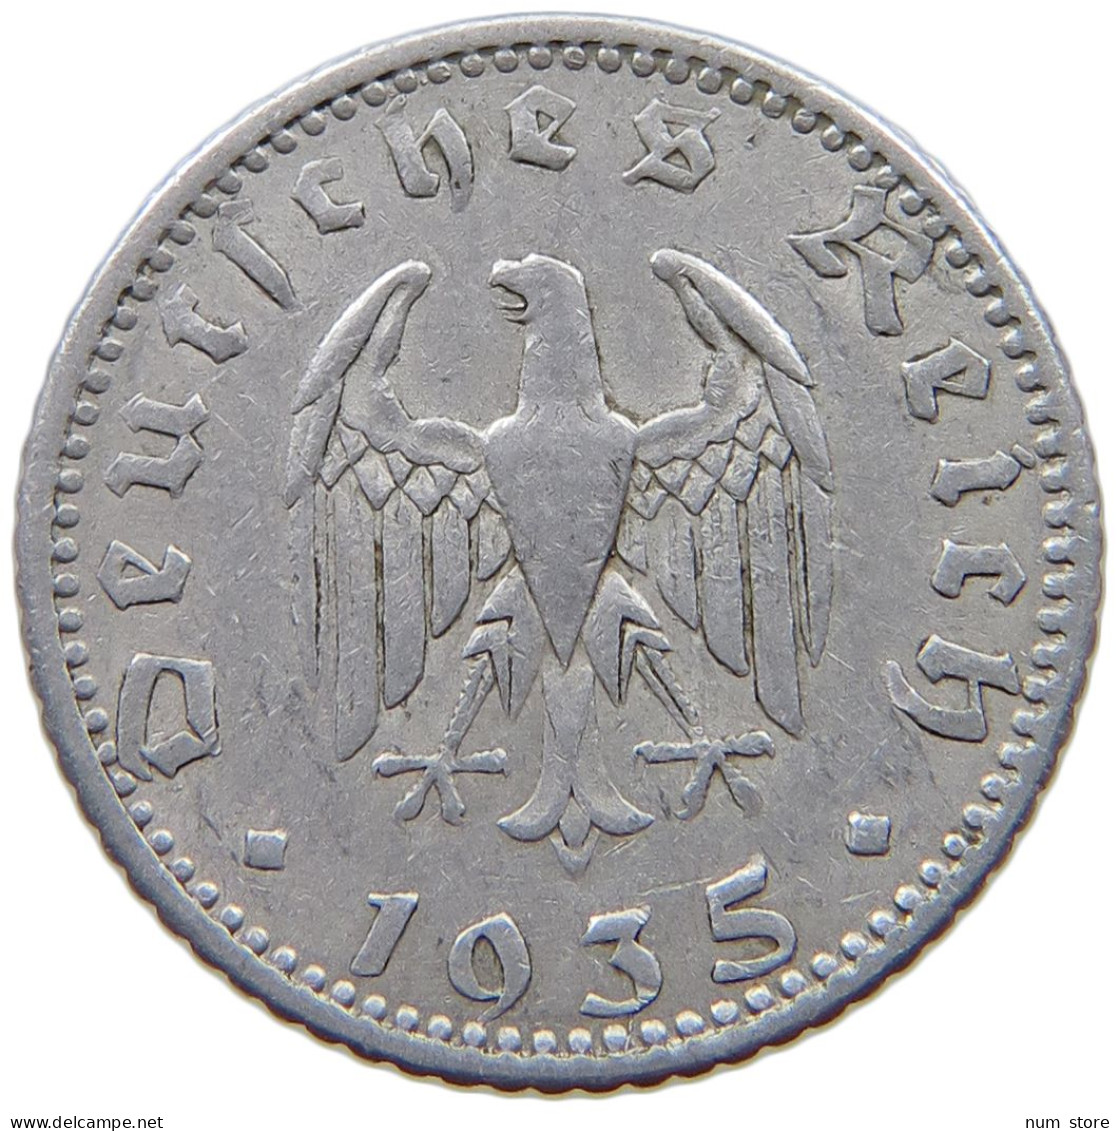 GERMANY 50 PFENNIG 1935 A #a076 0485 - 50 Reichspfennig